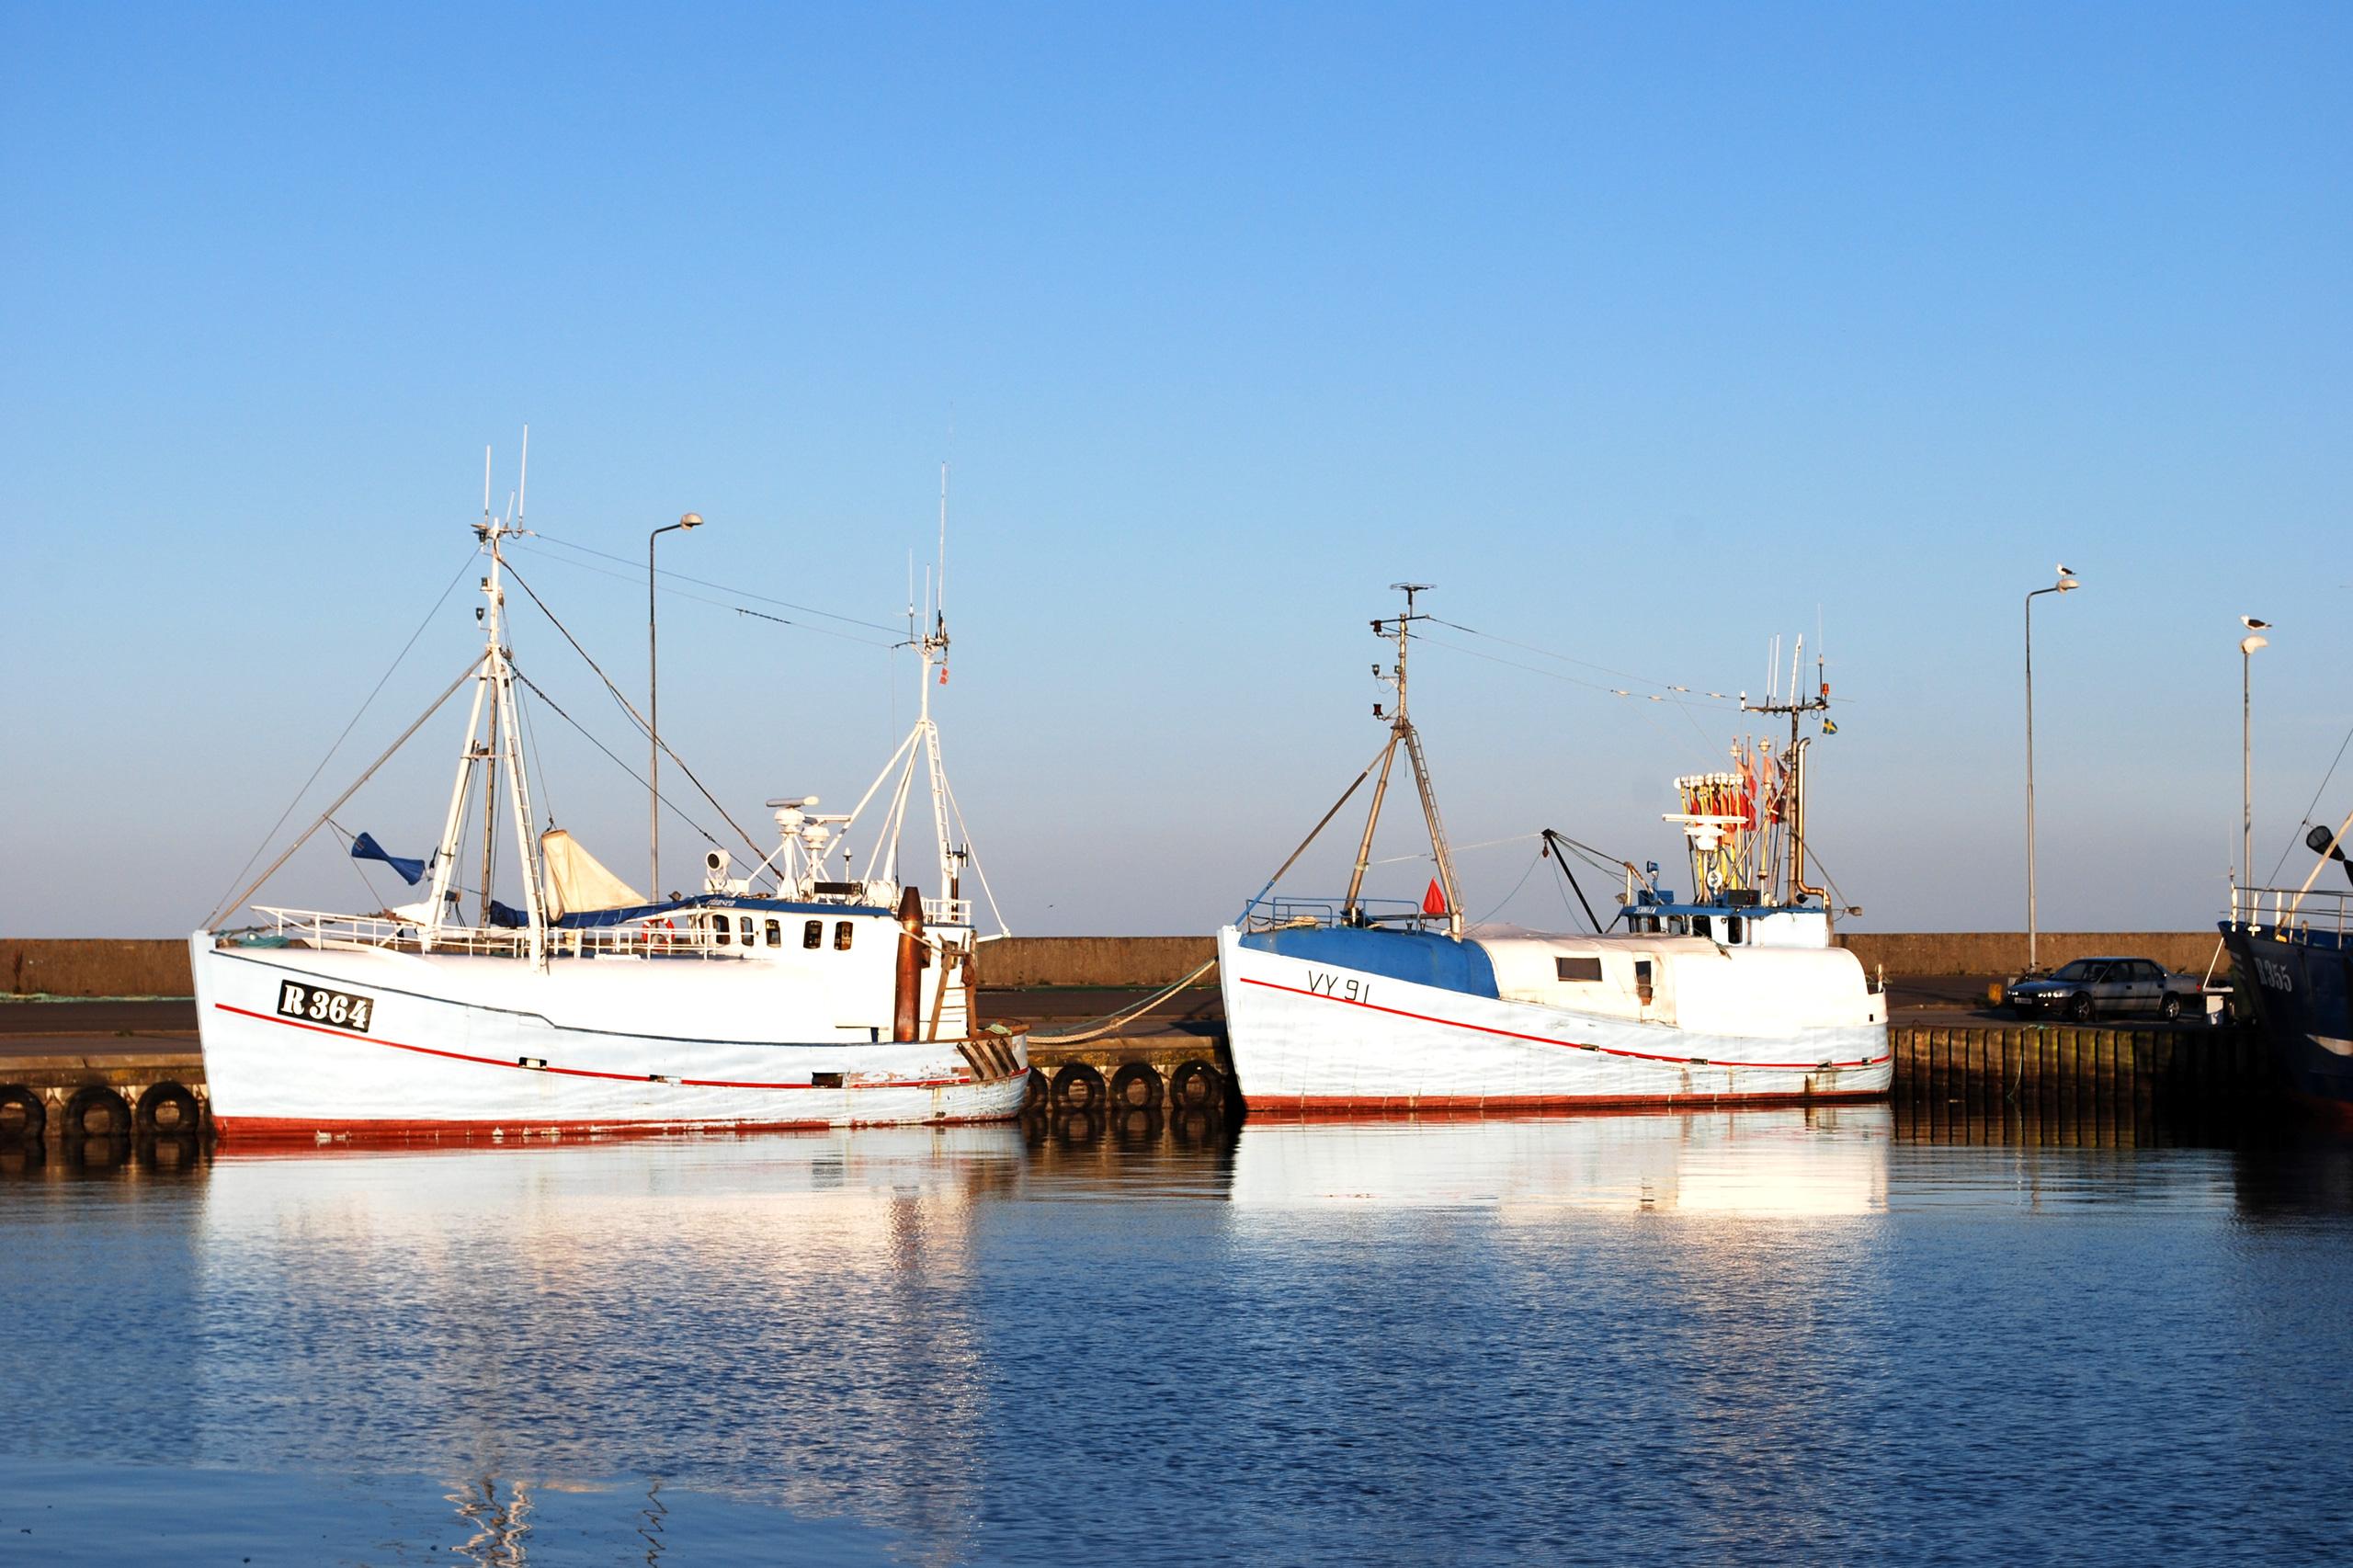 Die charmante Stadt Nexø ist ein ideales Ausflugsziel, um das maritime Flair von Bornholm kennenzulernen. Copyright: Destination Bornholm